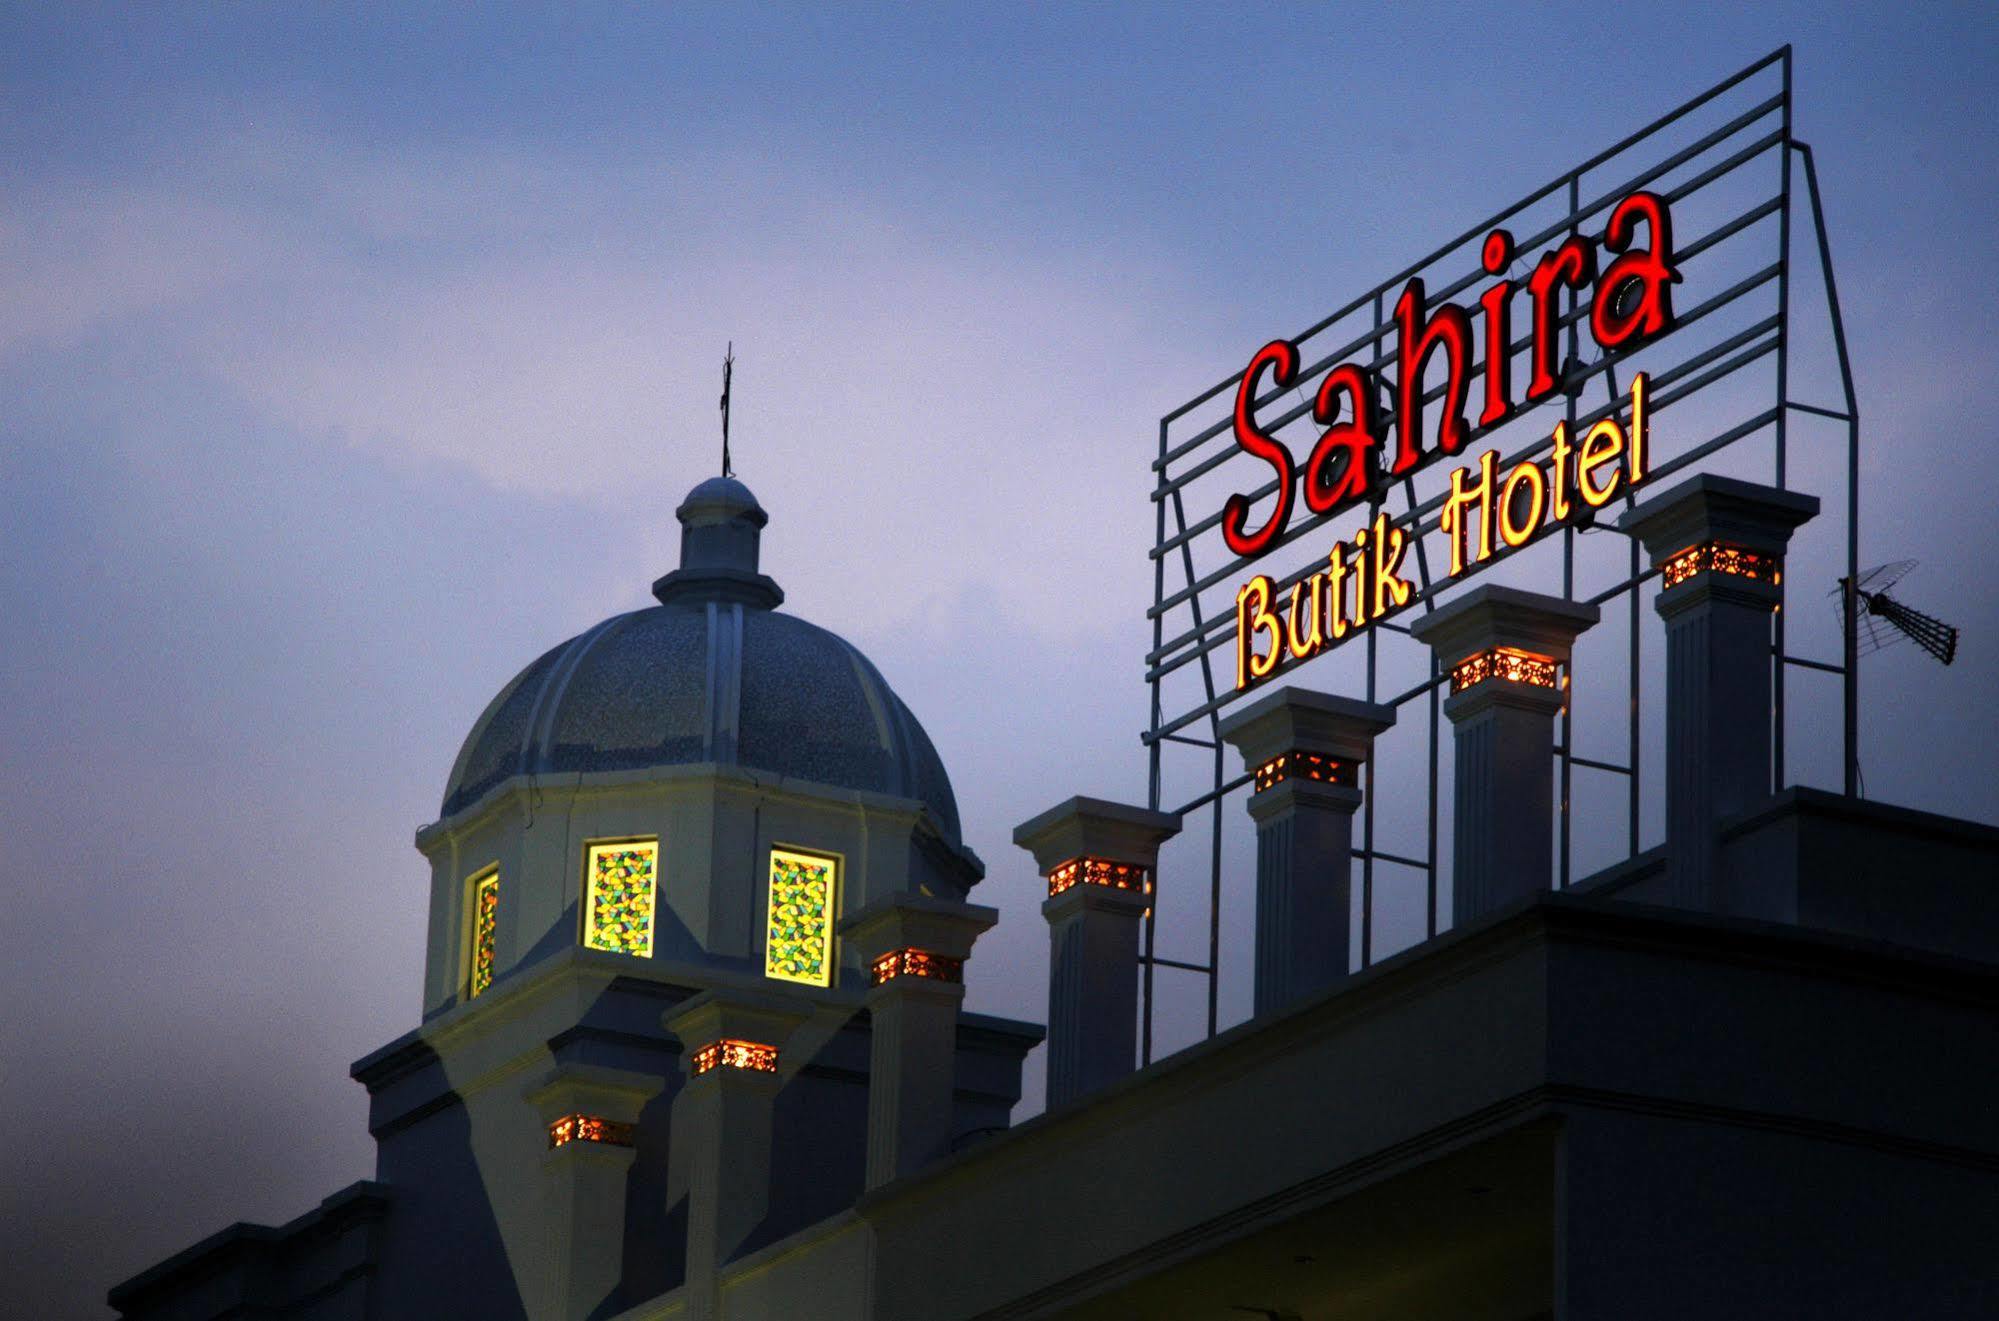 Sahira Butik Hotel Bogor Buitenkant foto